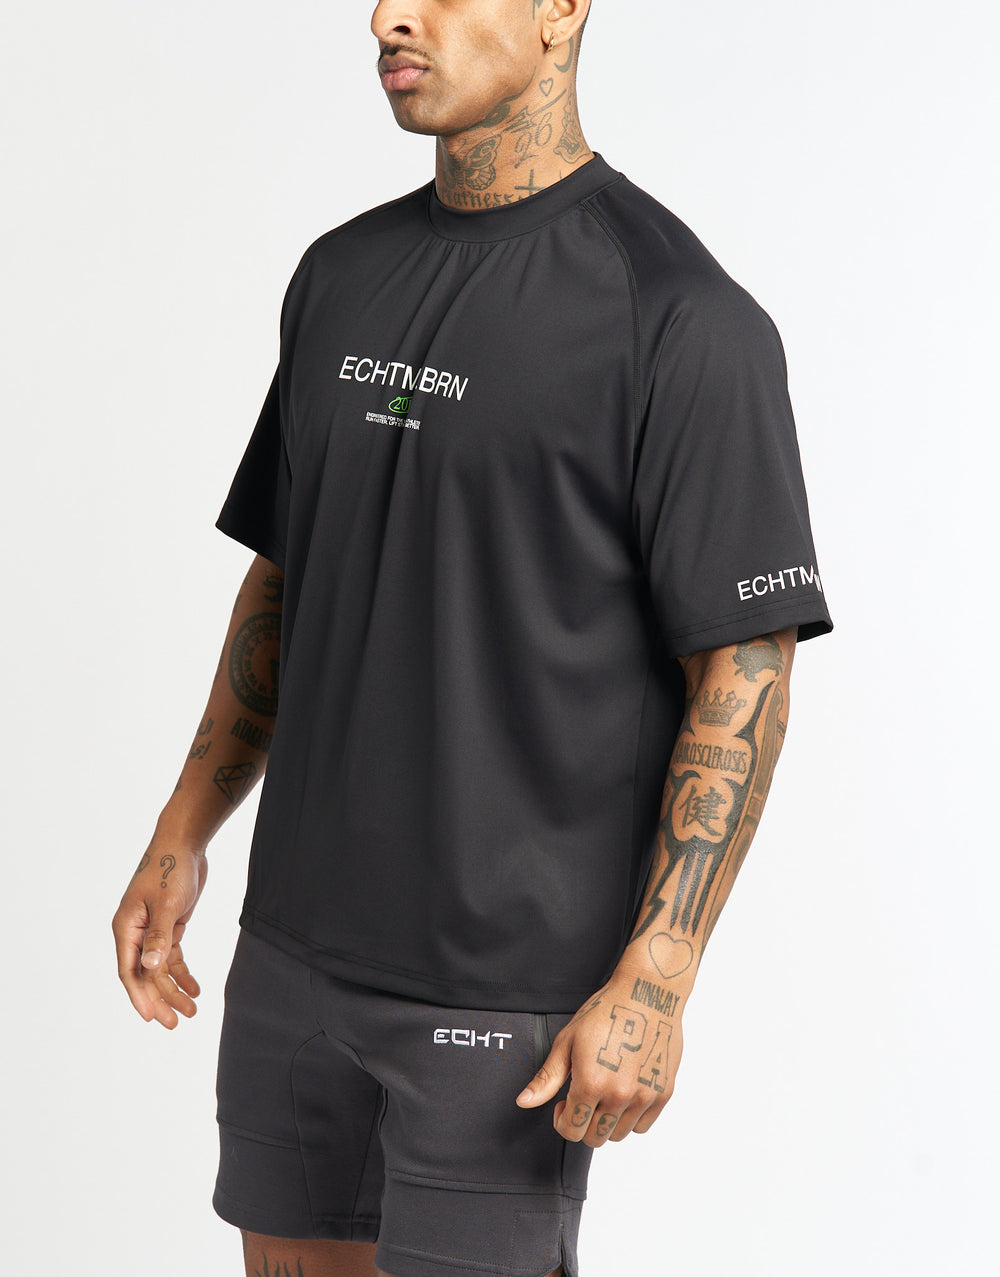 MLBRN T-Shirt - Black